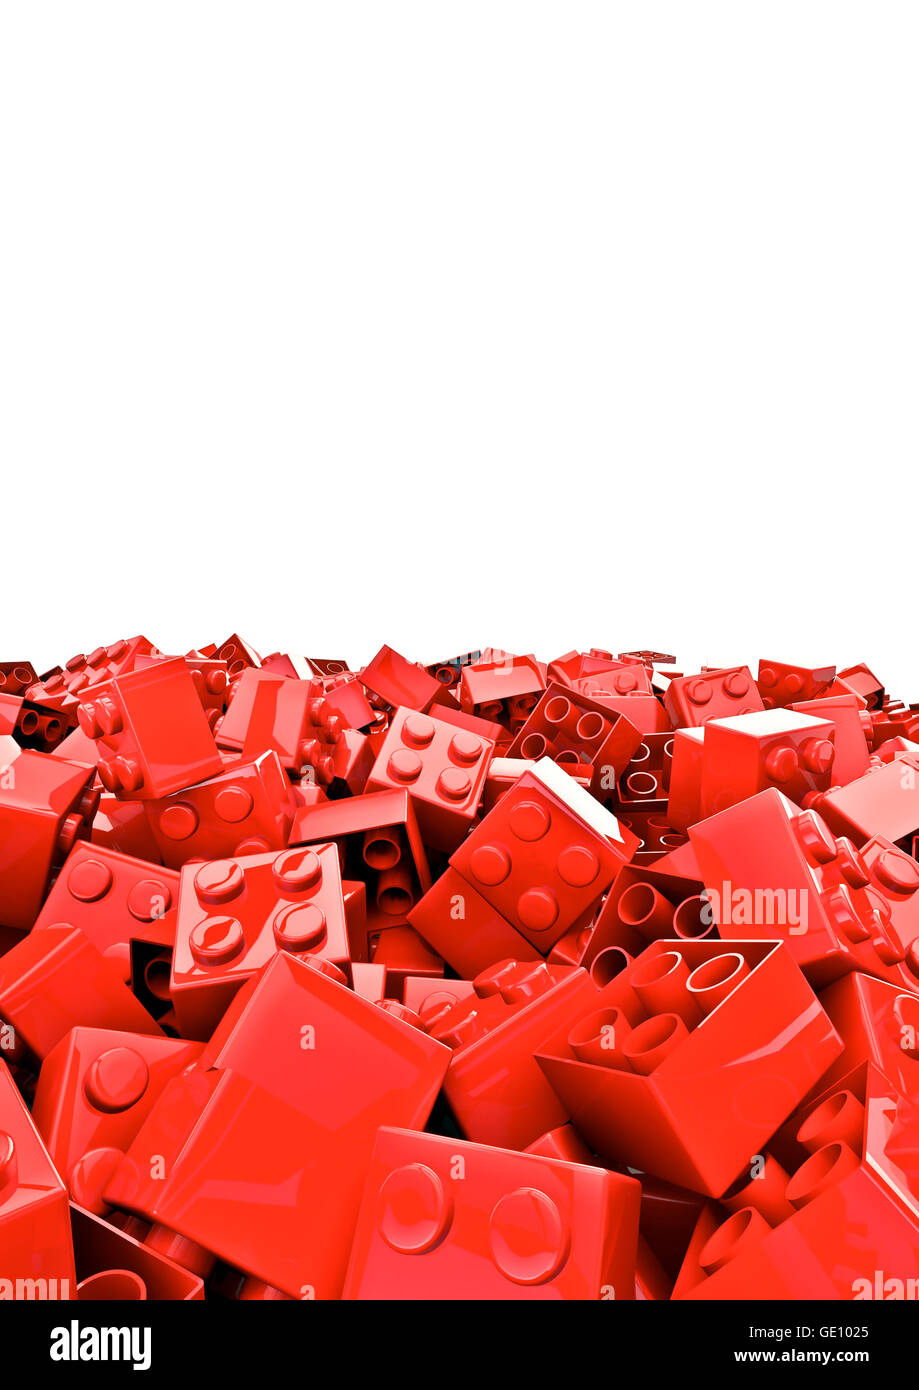 Spielzeug Bausteine / 3D Render von Kunststoff-Spielzeug Bausteine Stockfoto